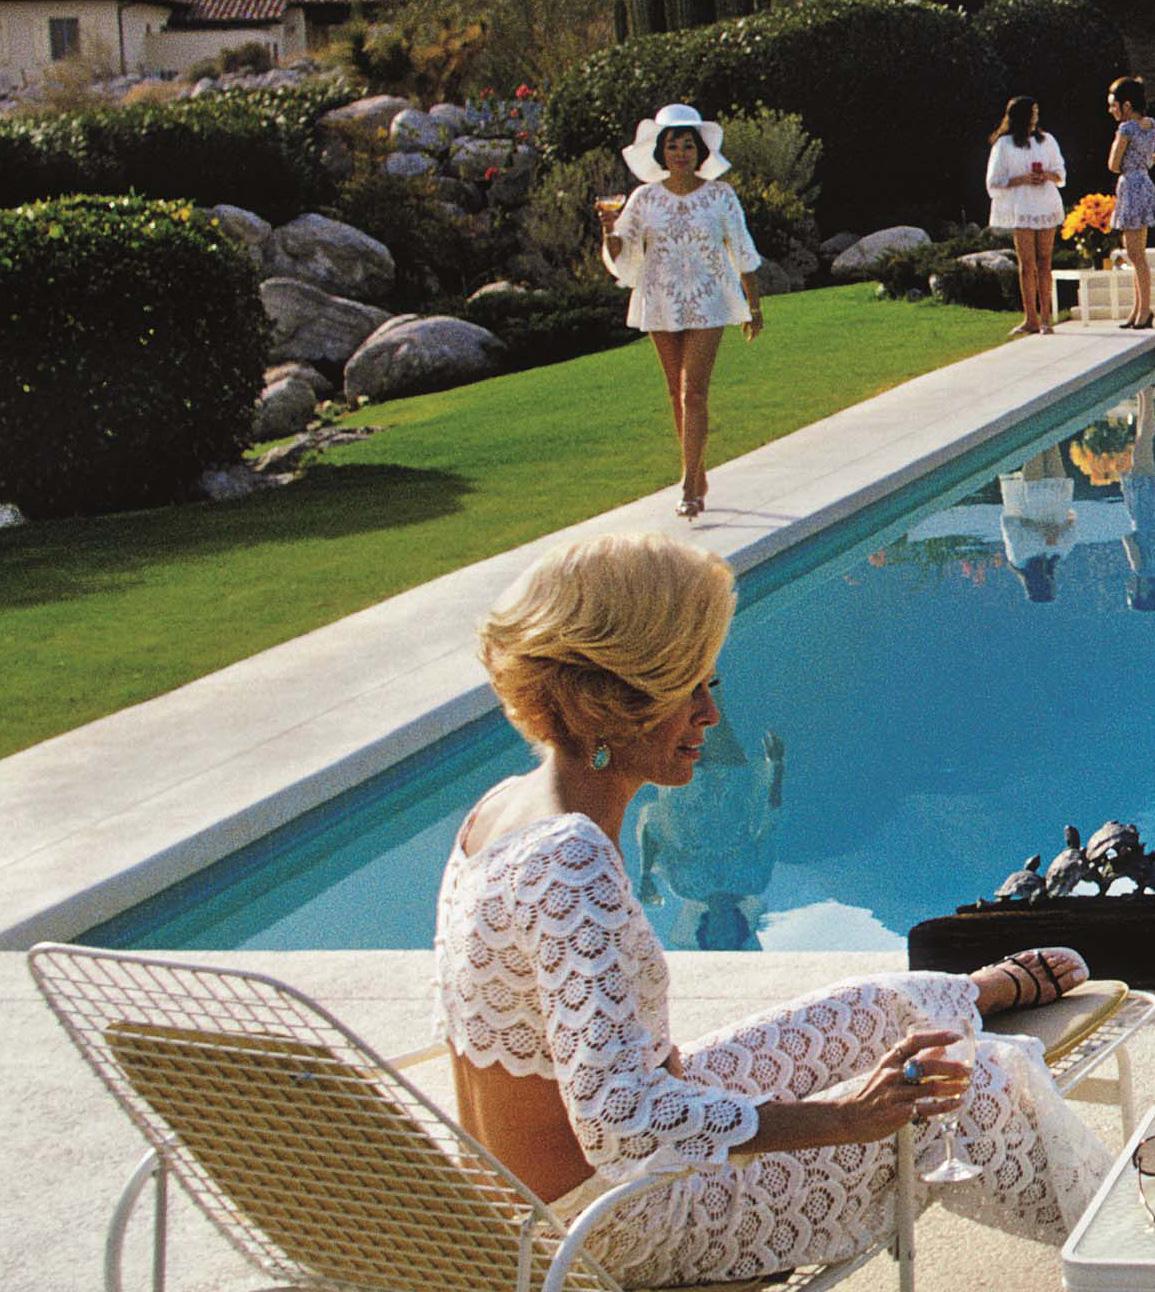 1970: Ein Wüstenhaus in Palm Springs, entworfen von Richard Neutra für Edgar Kaufman. Lita Baron nähert sich Nelda Linsk, rechts, der Frau des Kunsthändlers Joseph Linsk, die sich mit einer Freundin, Helen Dzo Dzo, unterhält.

Dieses Bild ist in